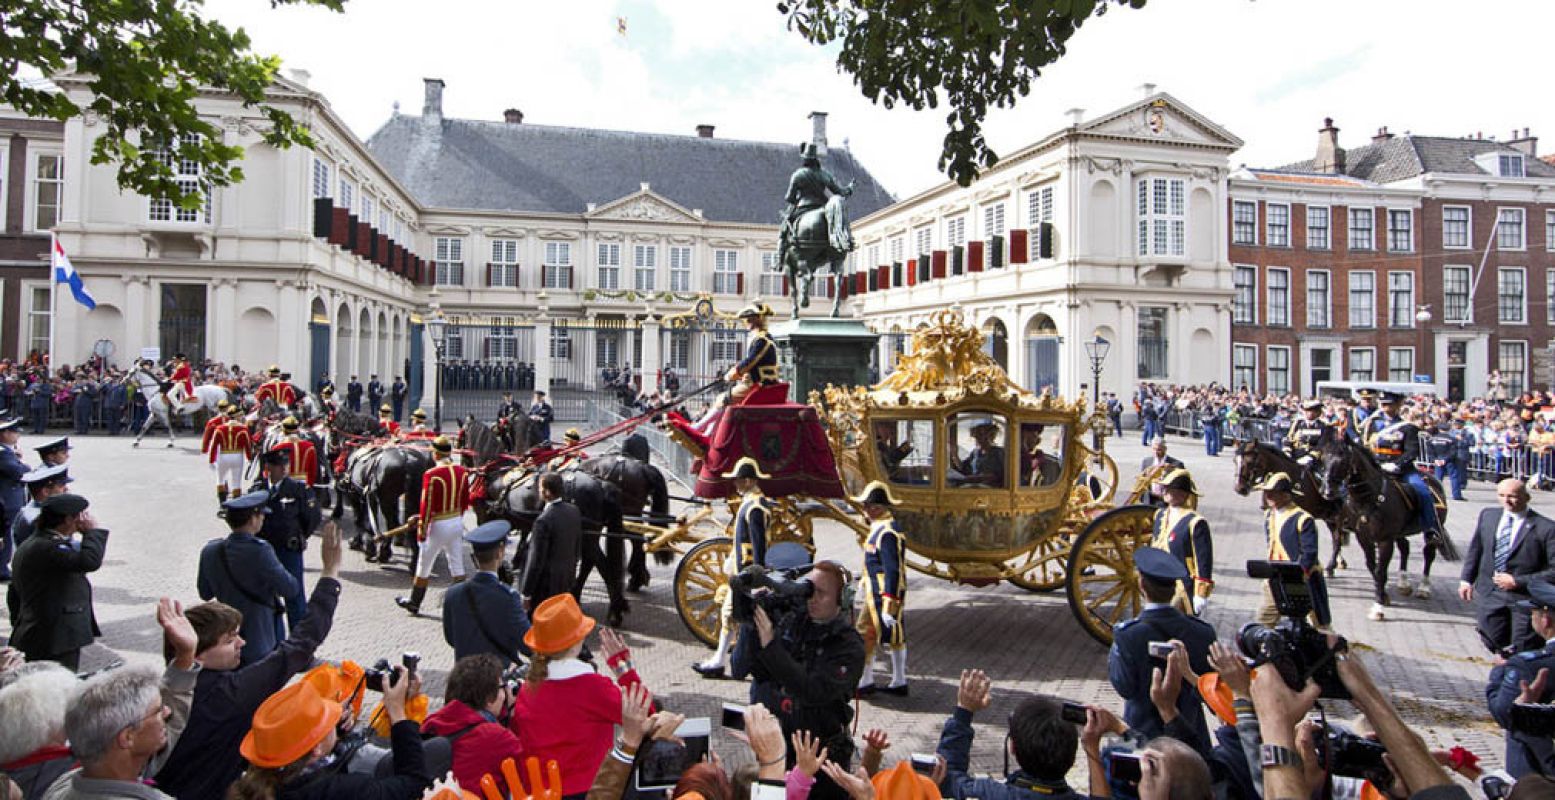 Prinsjesdag is altijd één groot spektakel. Foto: © NBTC, Holland Mediabank